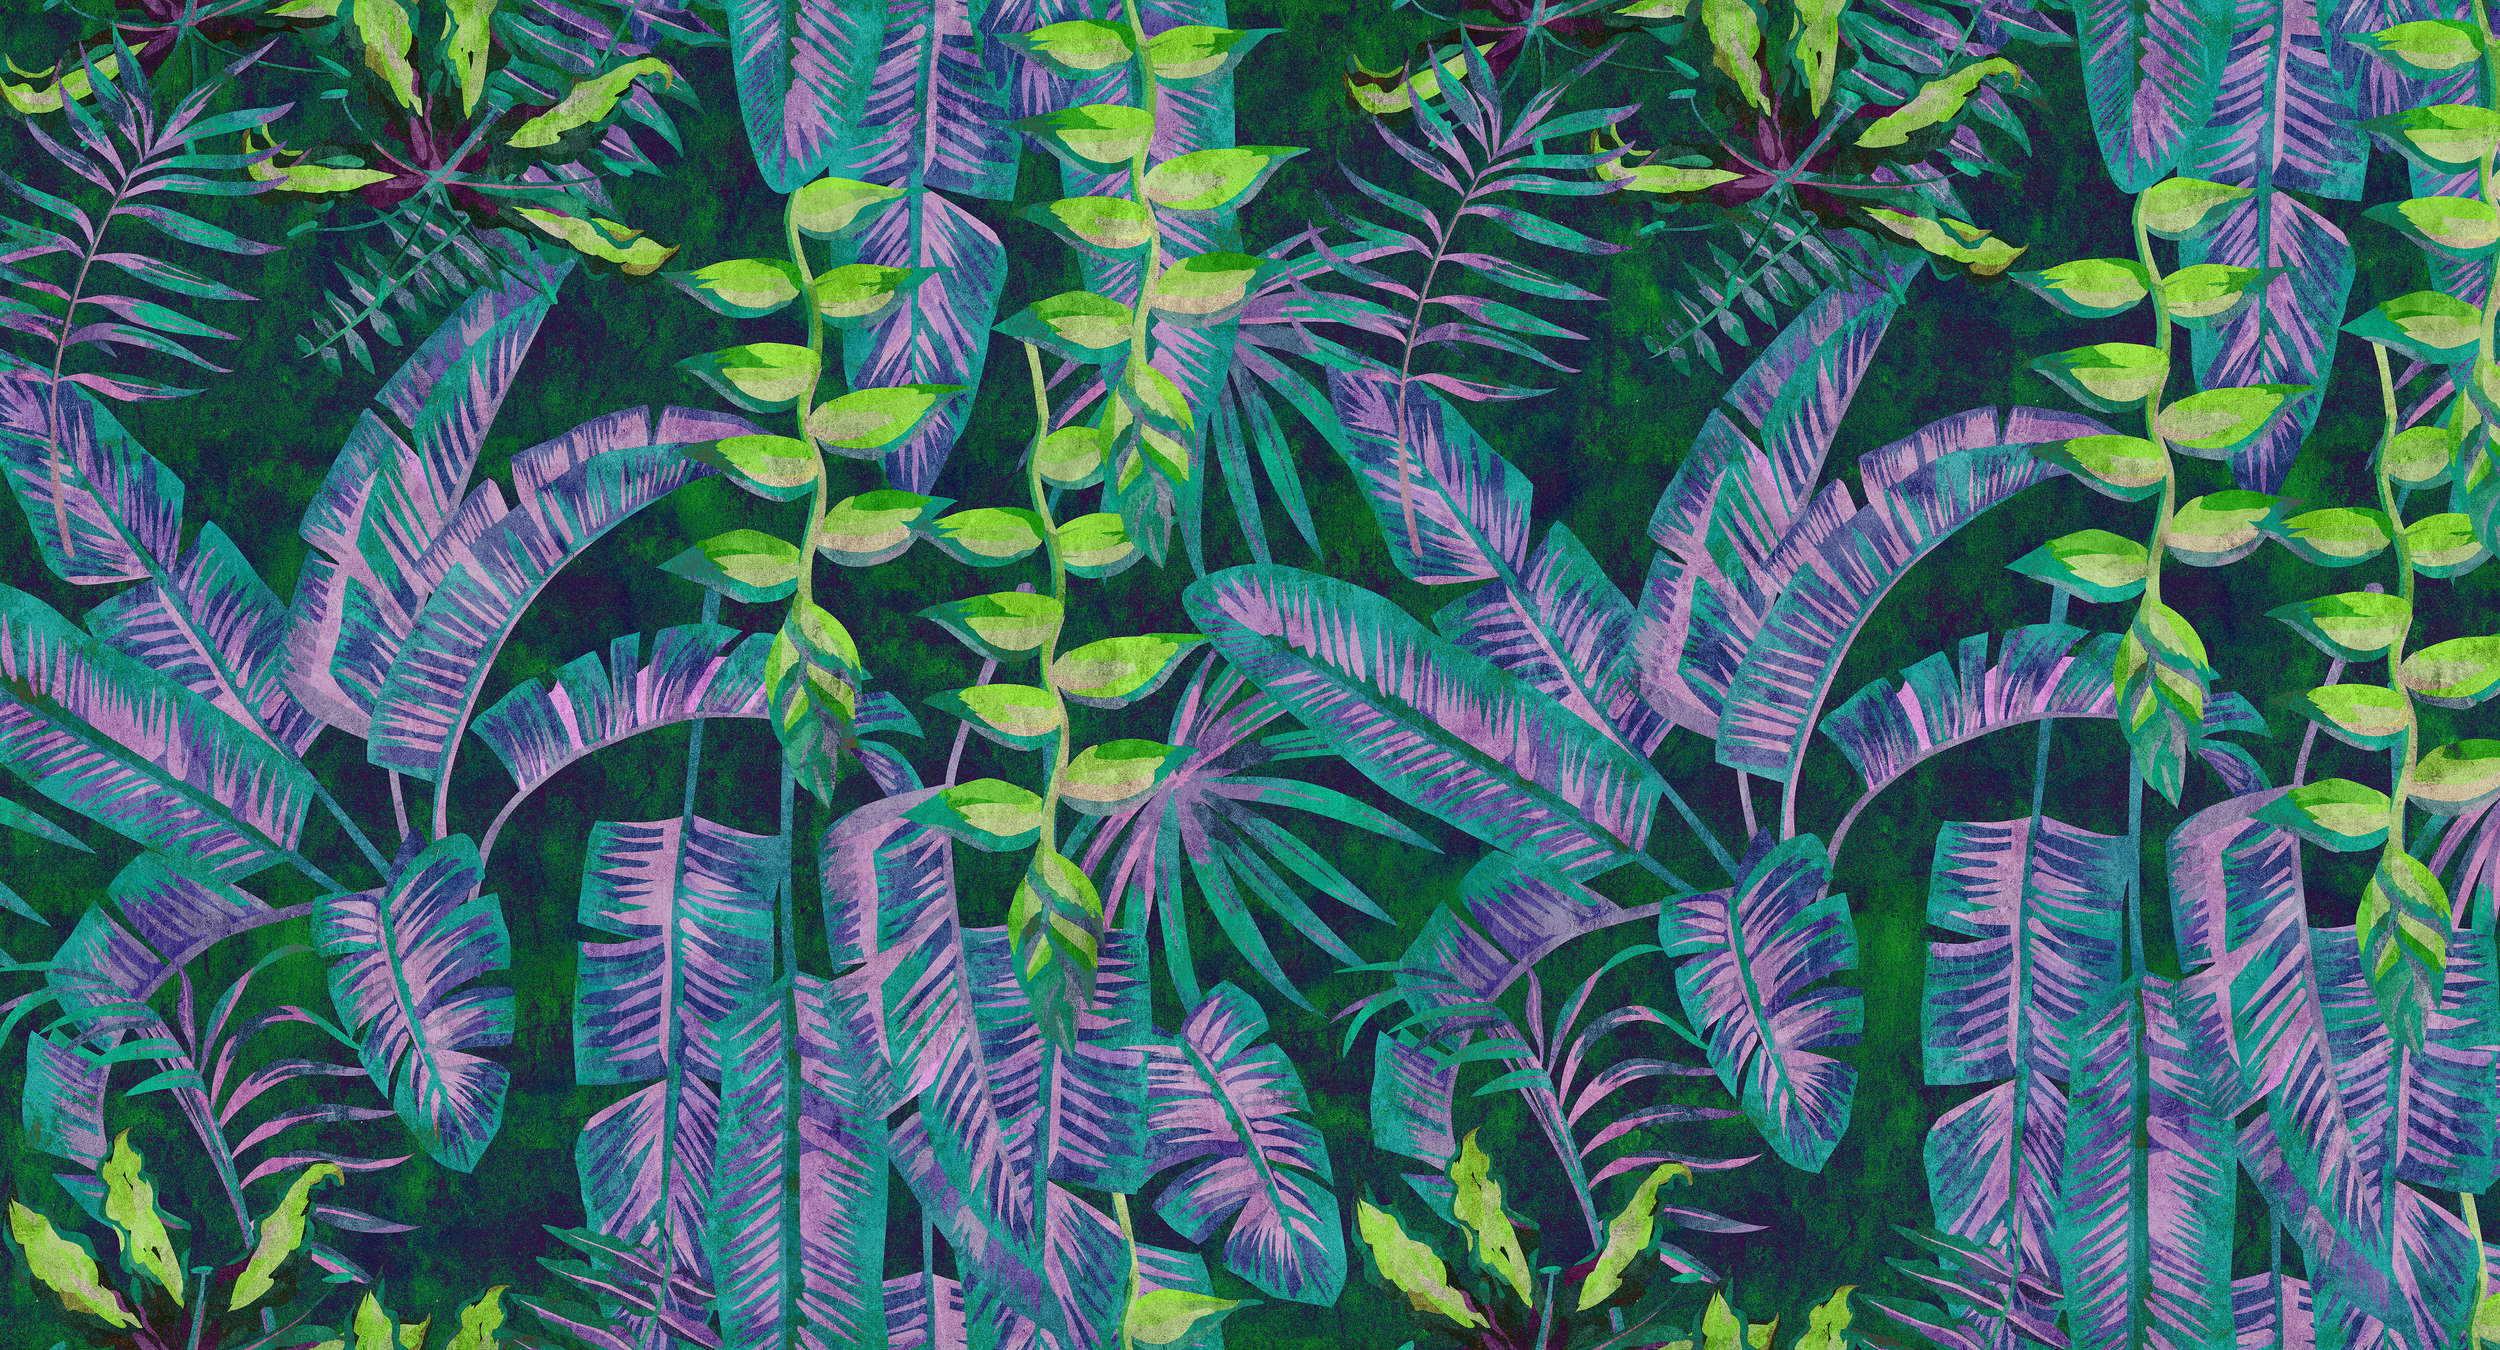             Tropicana 5 - Papel pintado Jungla con colores neón en estructura de papel secante - Azul, Verde | Liso mate
        